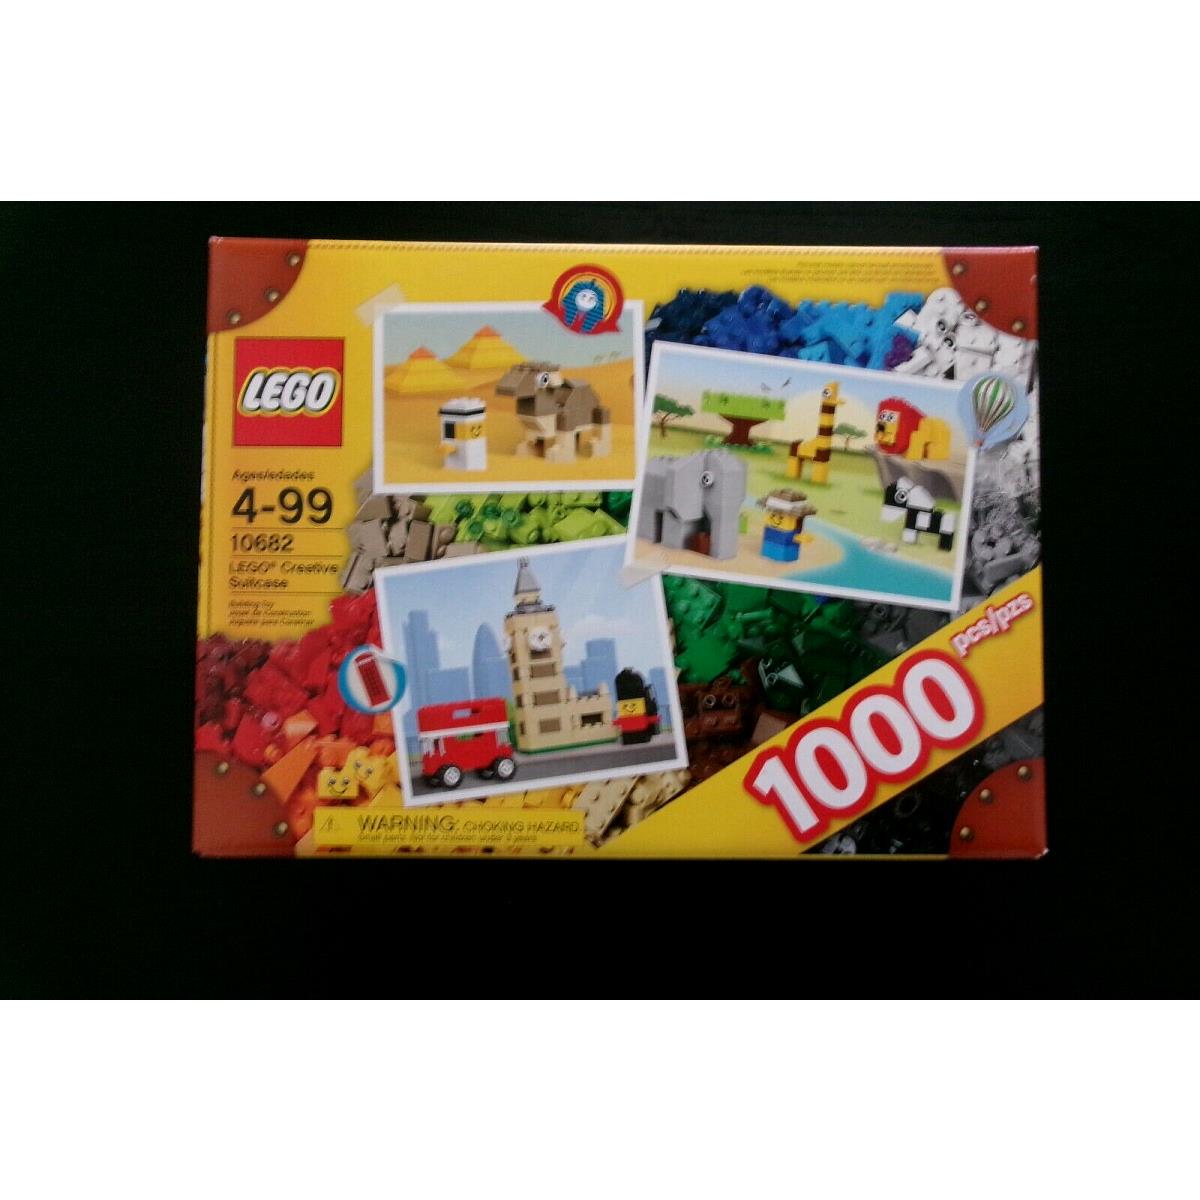 Lego 10682 Creative Suitcase 1000 Pcs - Excellent